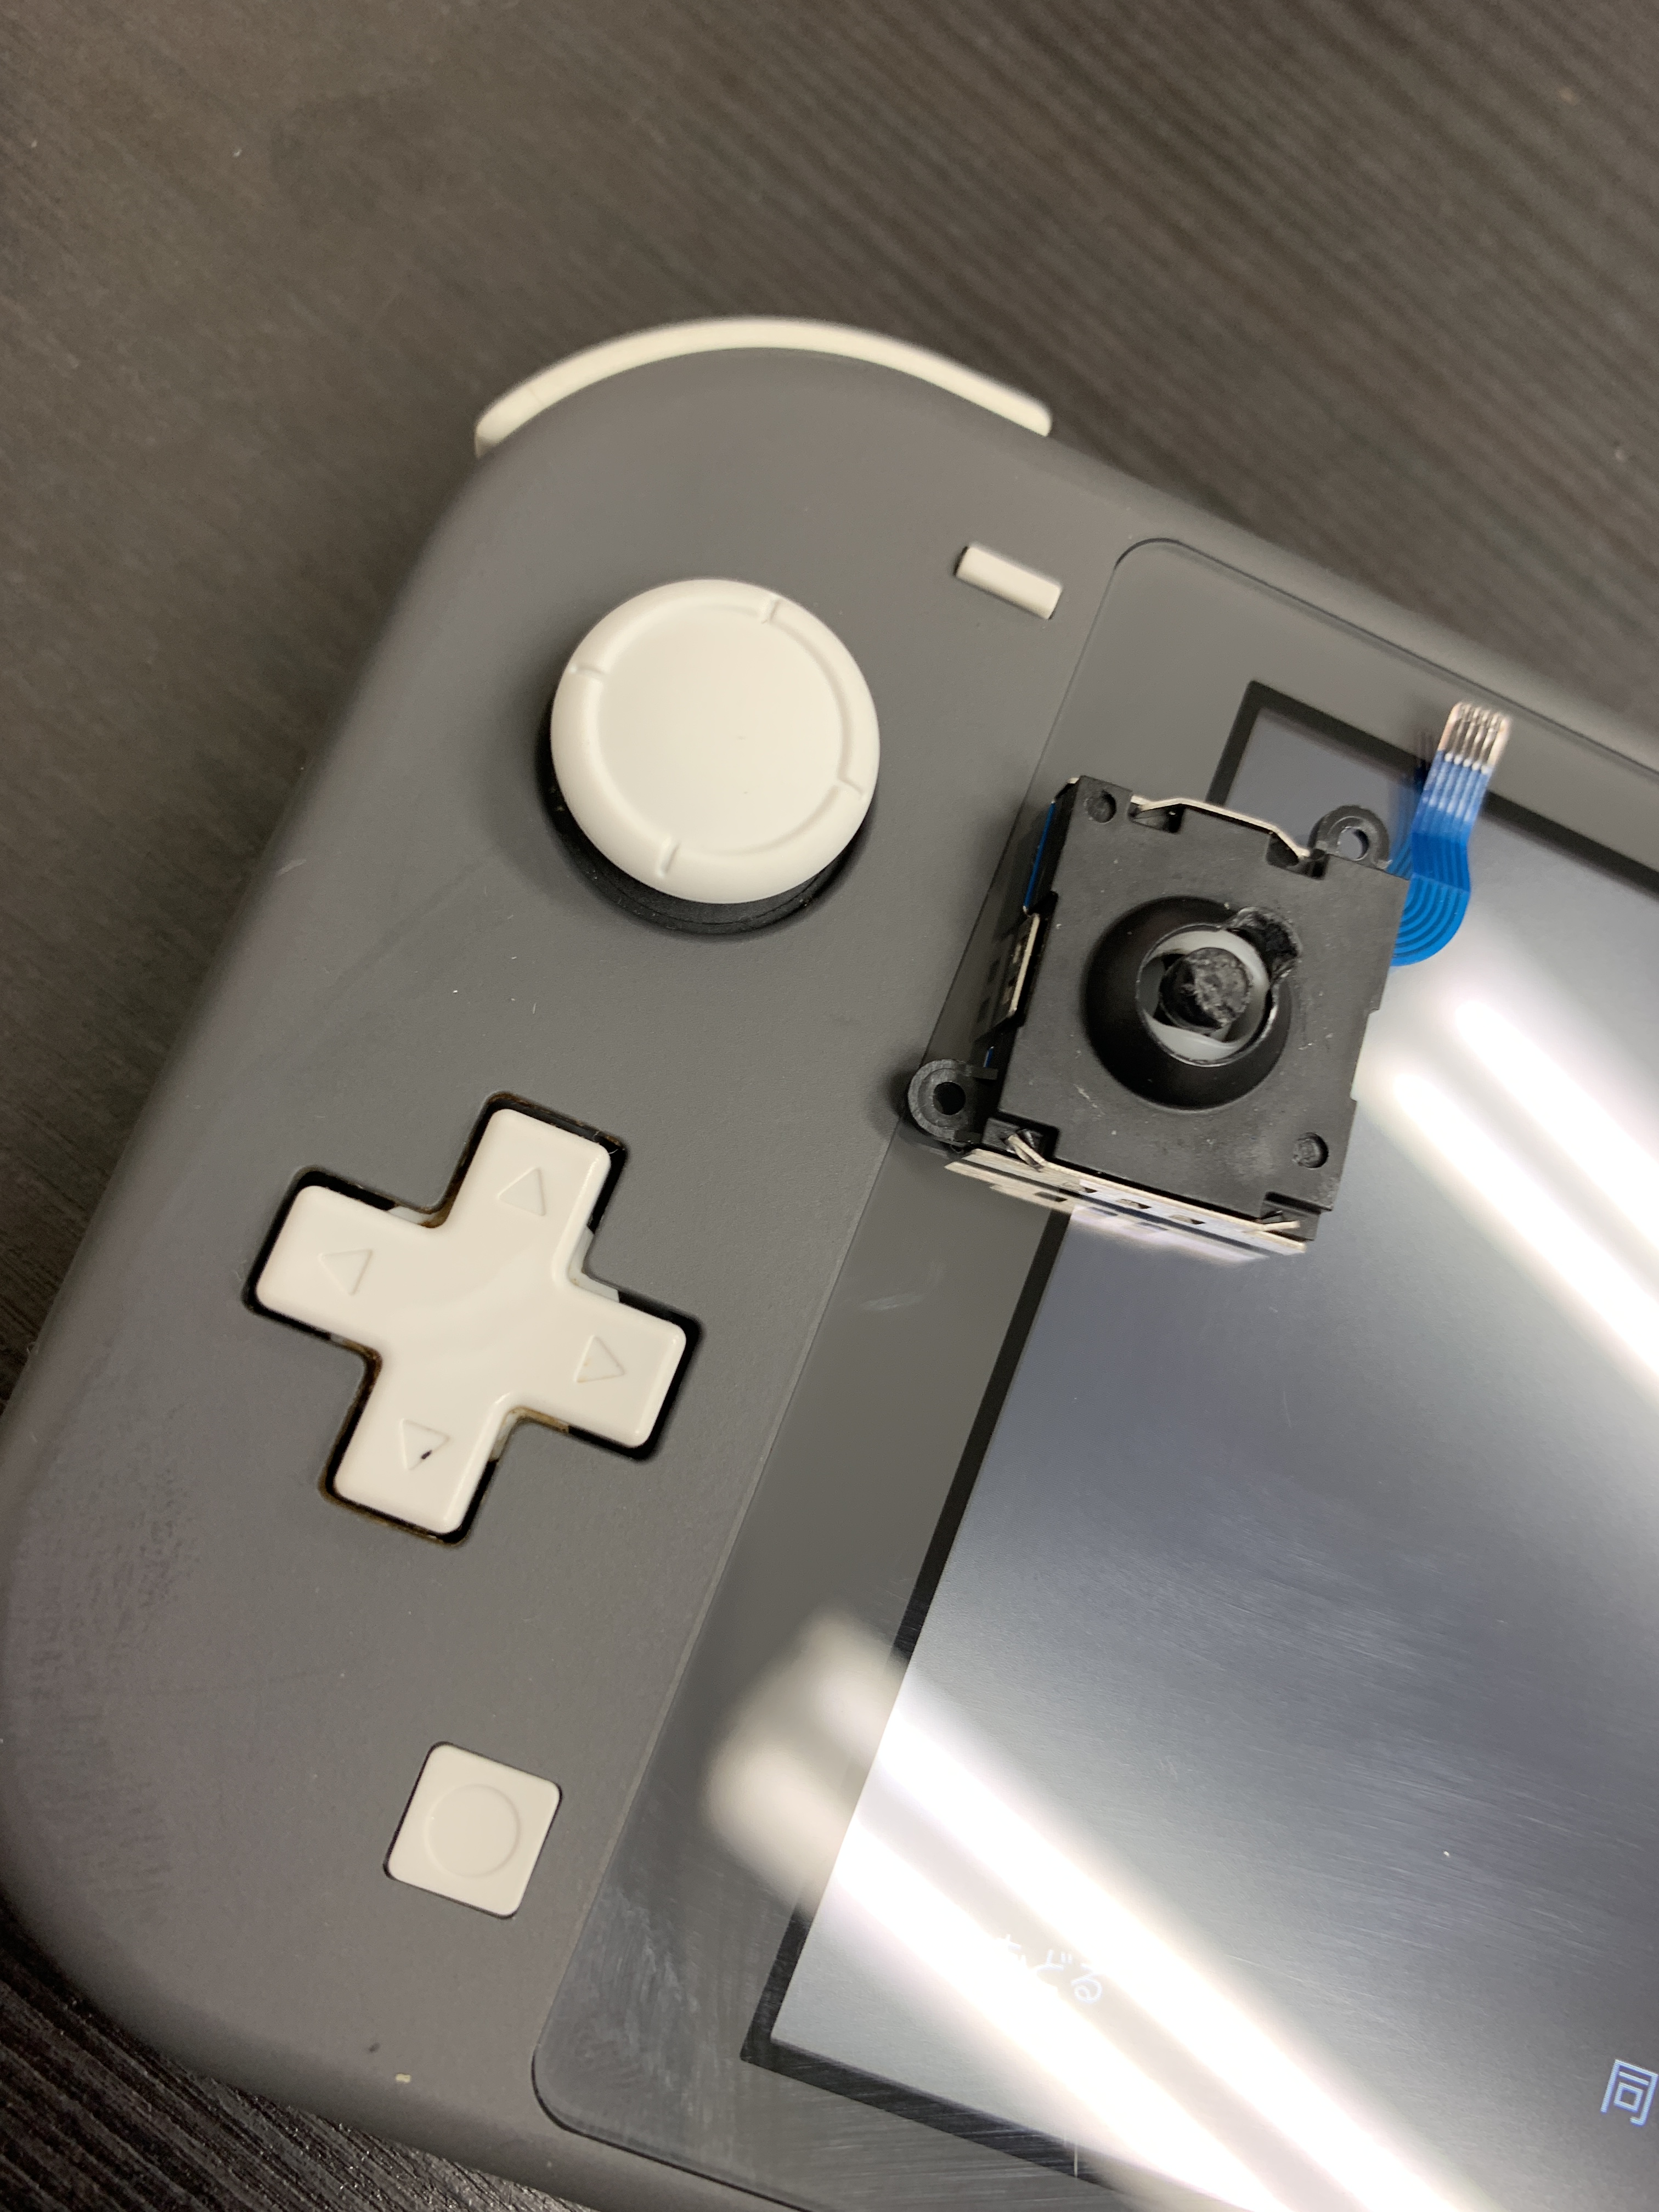 横浜 任天堂switch Liteアナログスティック交換可能です 即日対応 Nintendo3ds Switch Psp 修理のゲームホスピタル Nintendo3ds ニンテンドーds Psp Switch 修理